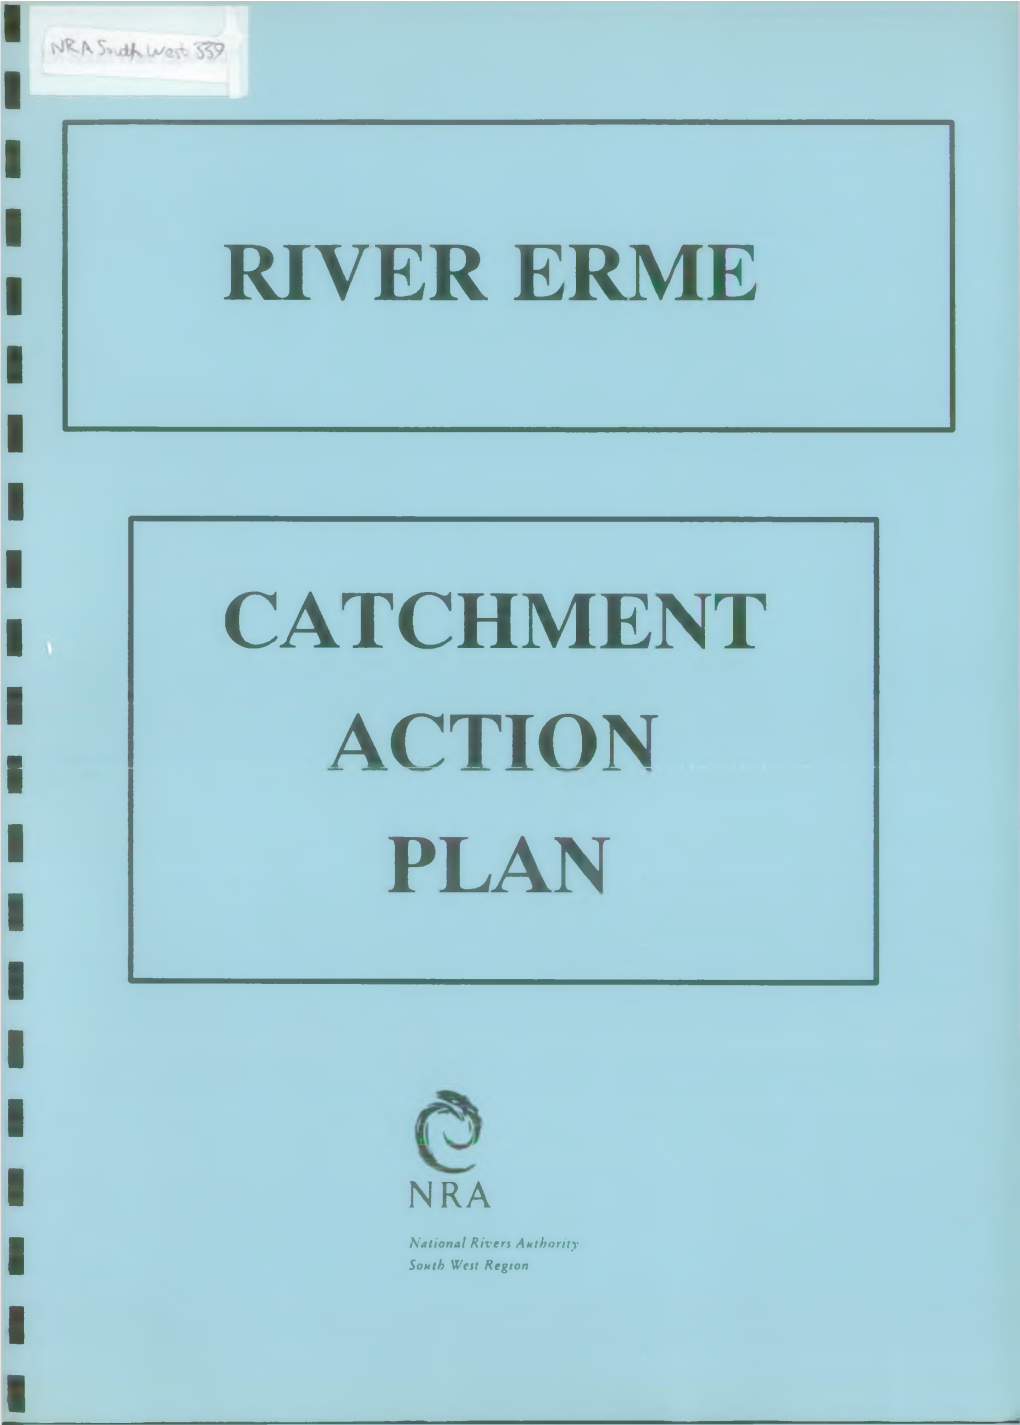 River Erme Catchment Action Plan